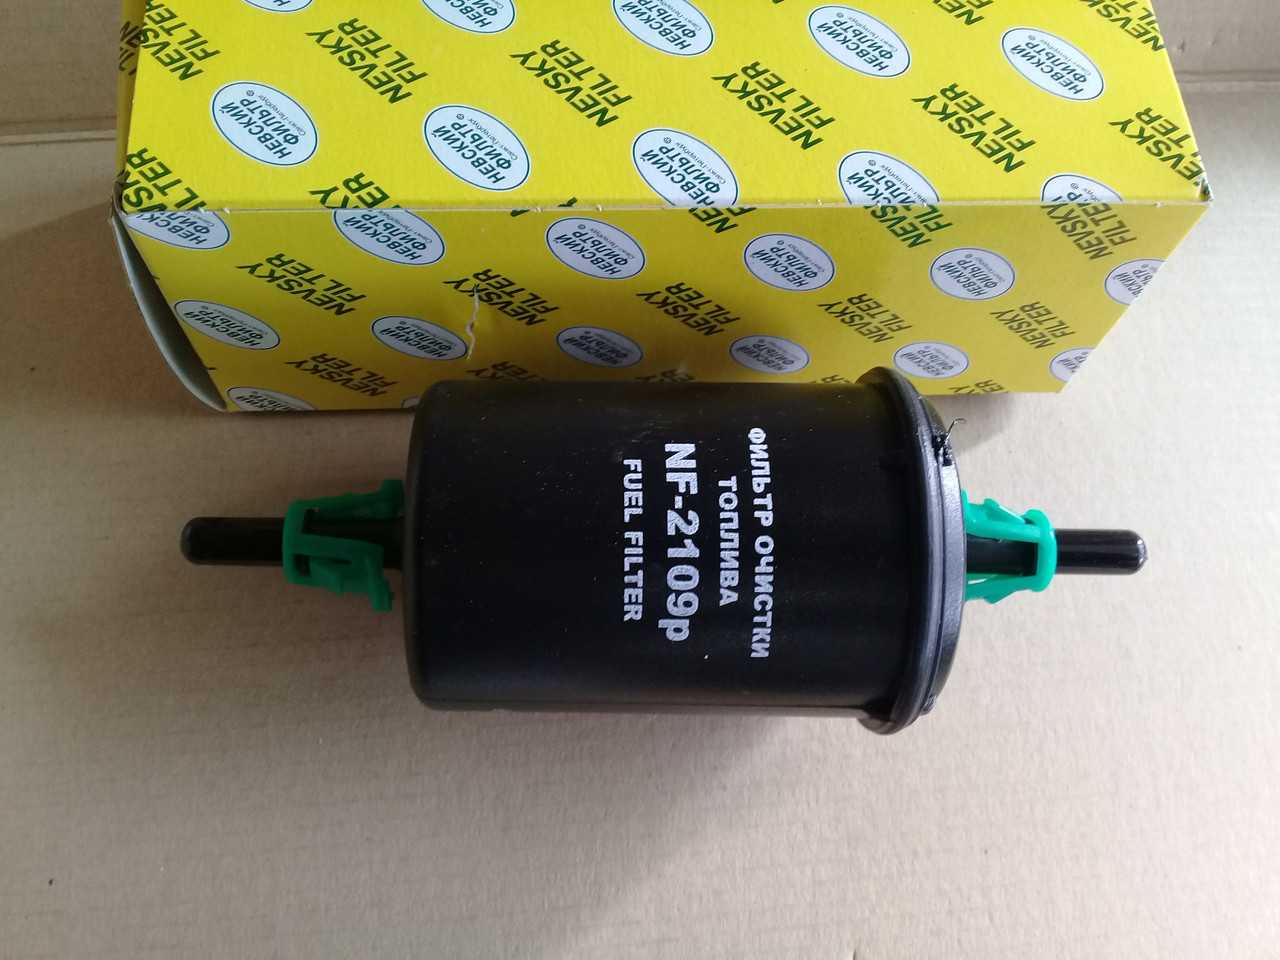 Топливный фильтр на ваз 2107 инжектор - как выбрать и заменить